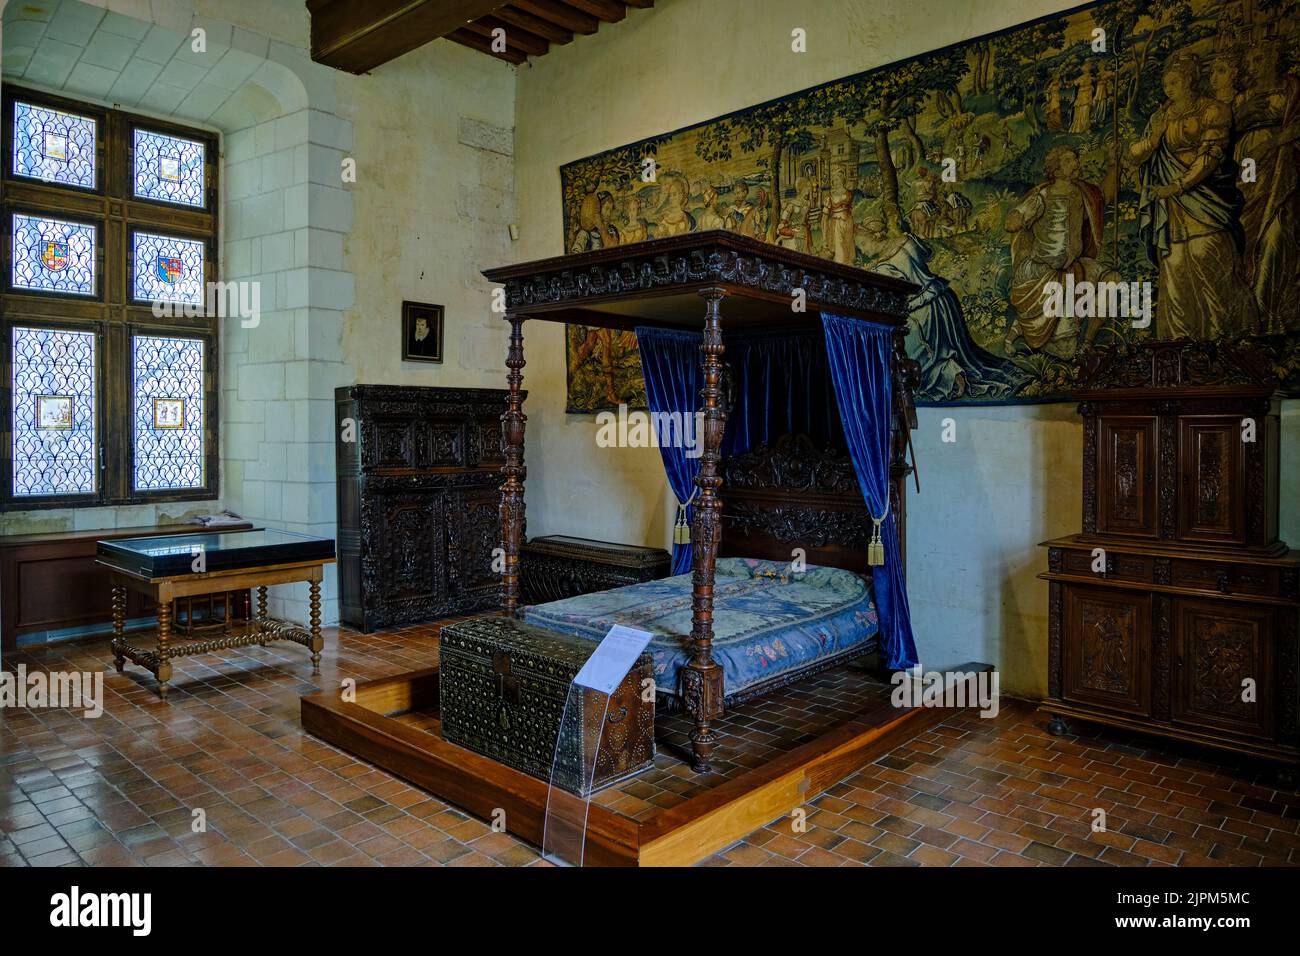 France, Indre-et-Loire, Chaumont-sur-Loire, Chaumont-sur-Loire castle,  Catherine de Medicis  bedroom Stock Photo